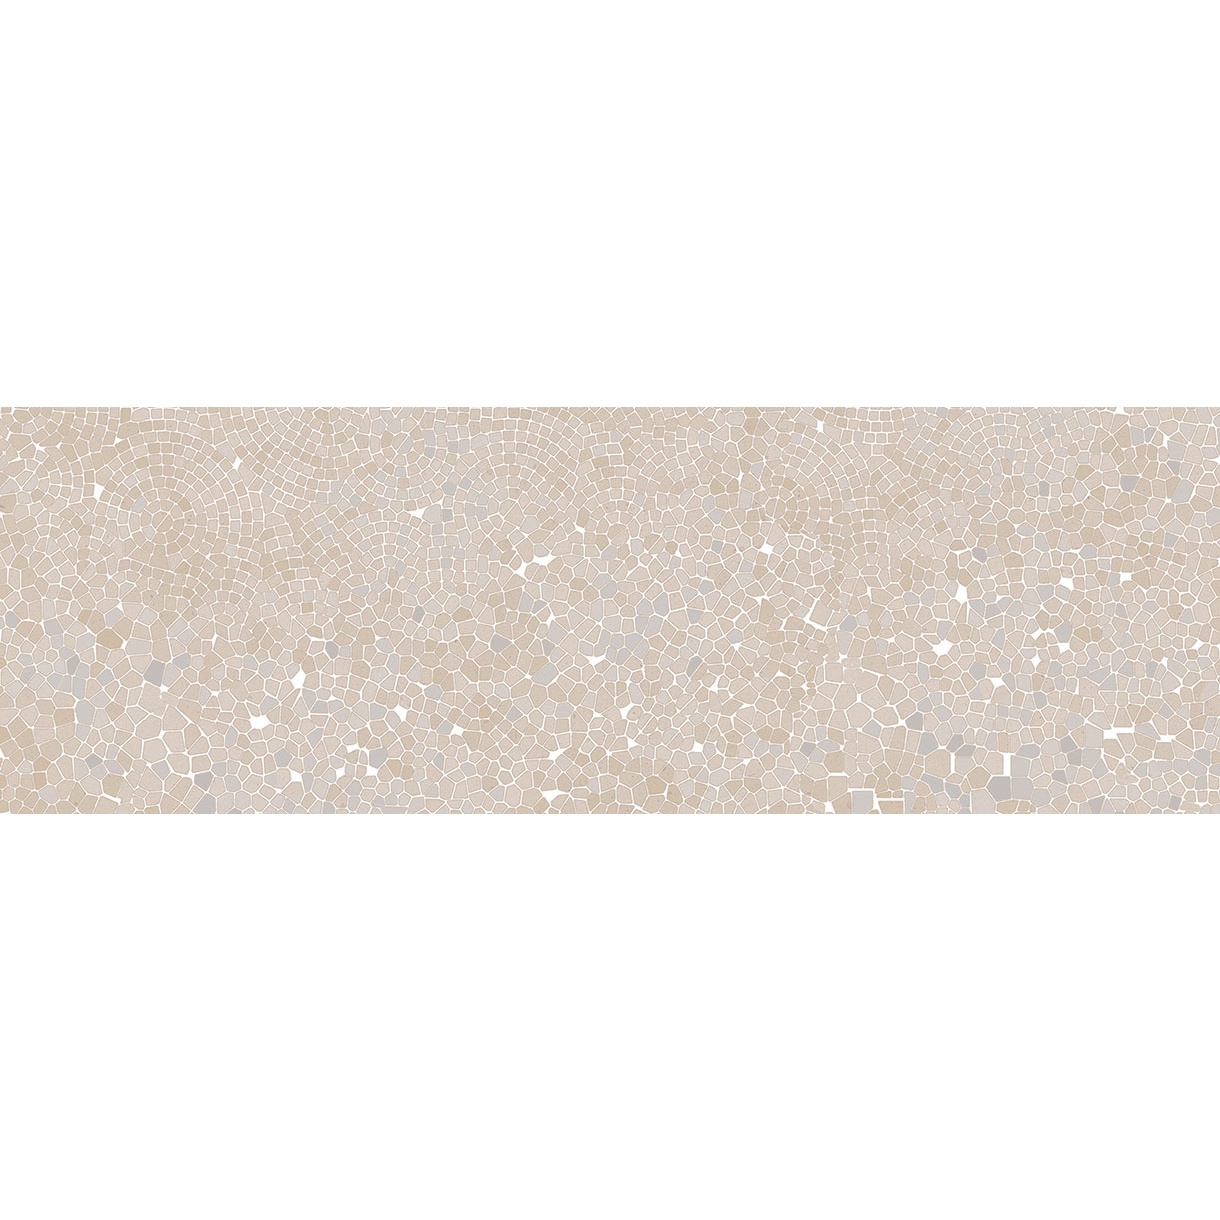 Плитка настенная Нефрит-Керамика Риф 20х60 см (00-00-5-17-01-11-601)